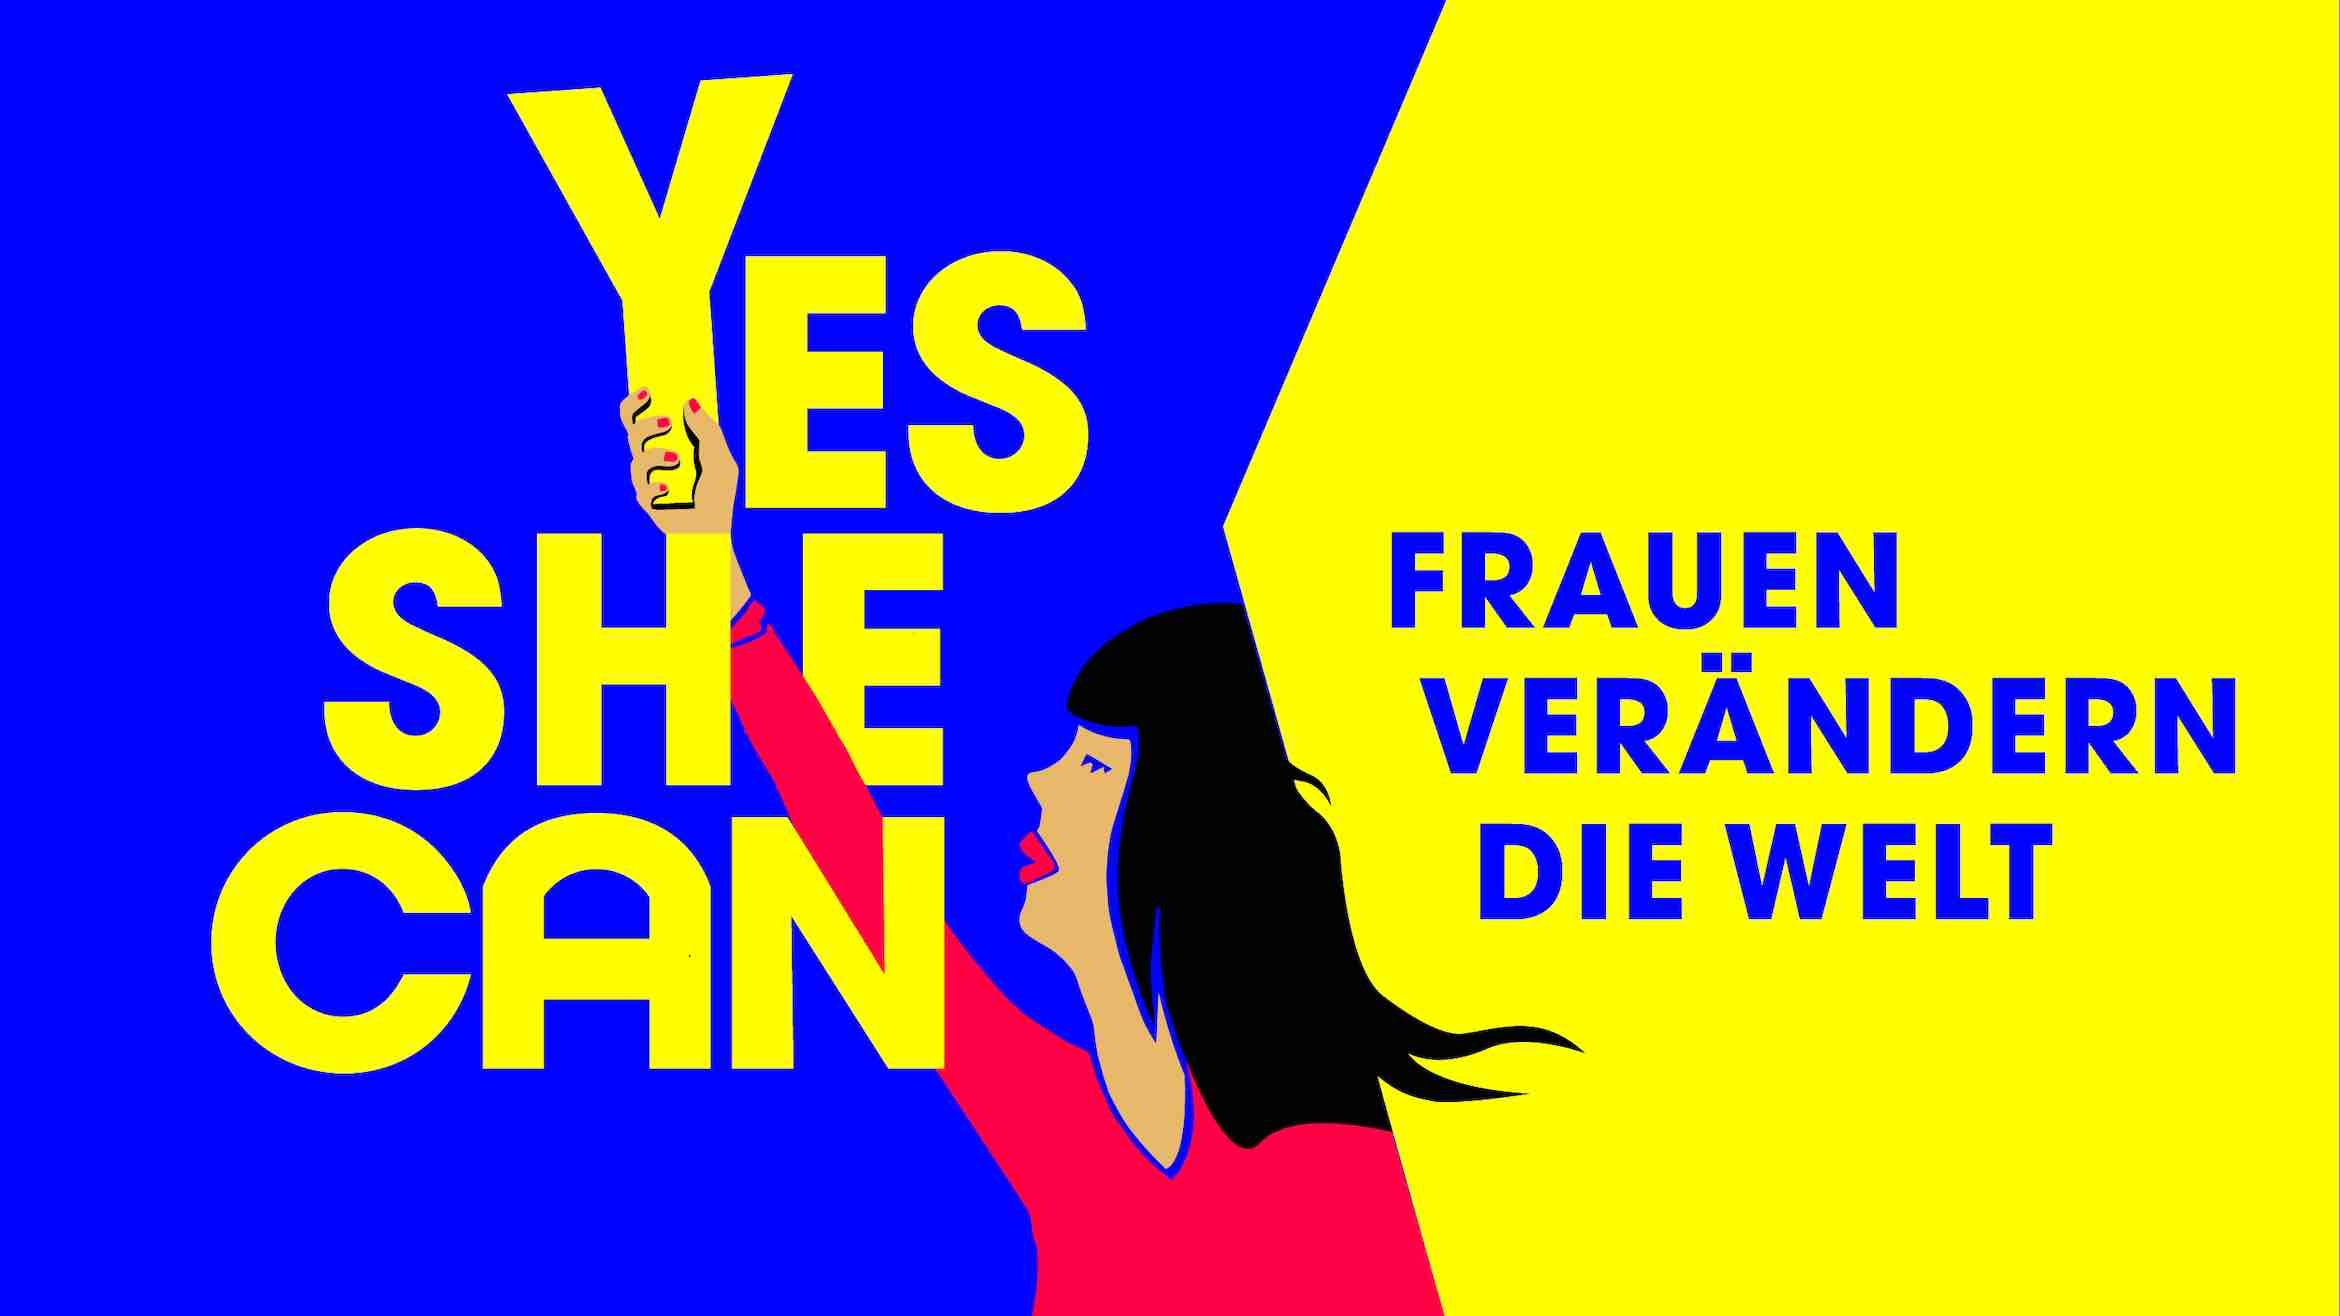 Die Dokumentation "Yes She Can – Frauen verändern die Welt" ist im Mai bei Amazon Prime Video gestartet